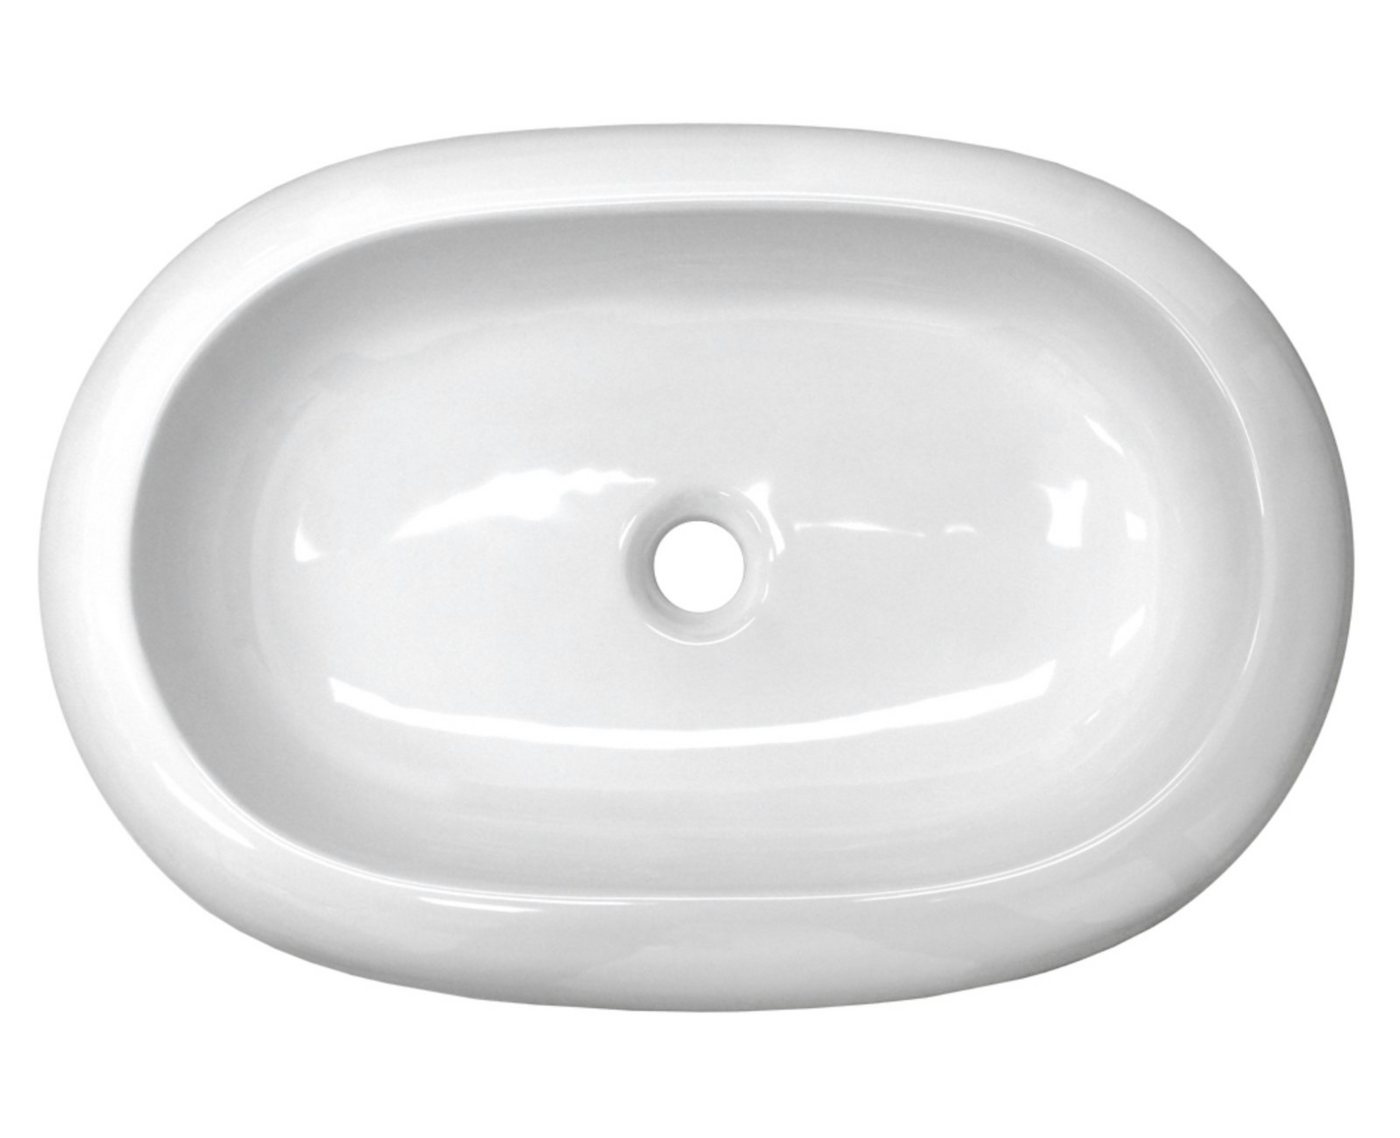 HAGO Aufsatzwaschbecken Keramik Waschbecken oval 630x420x120 mm weiß ohne Überlauf Aufsatzwasc von HAGO